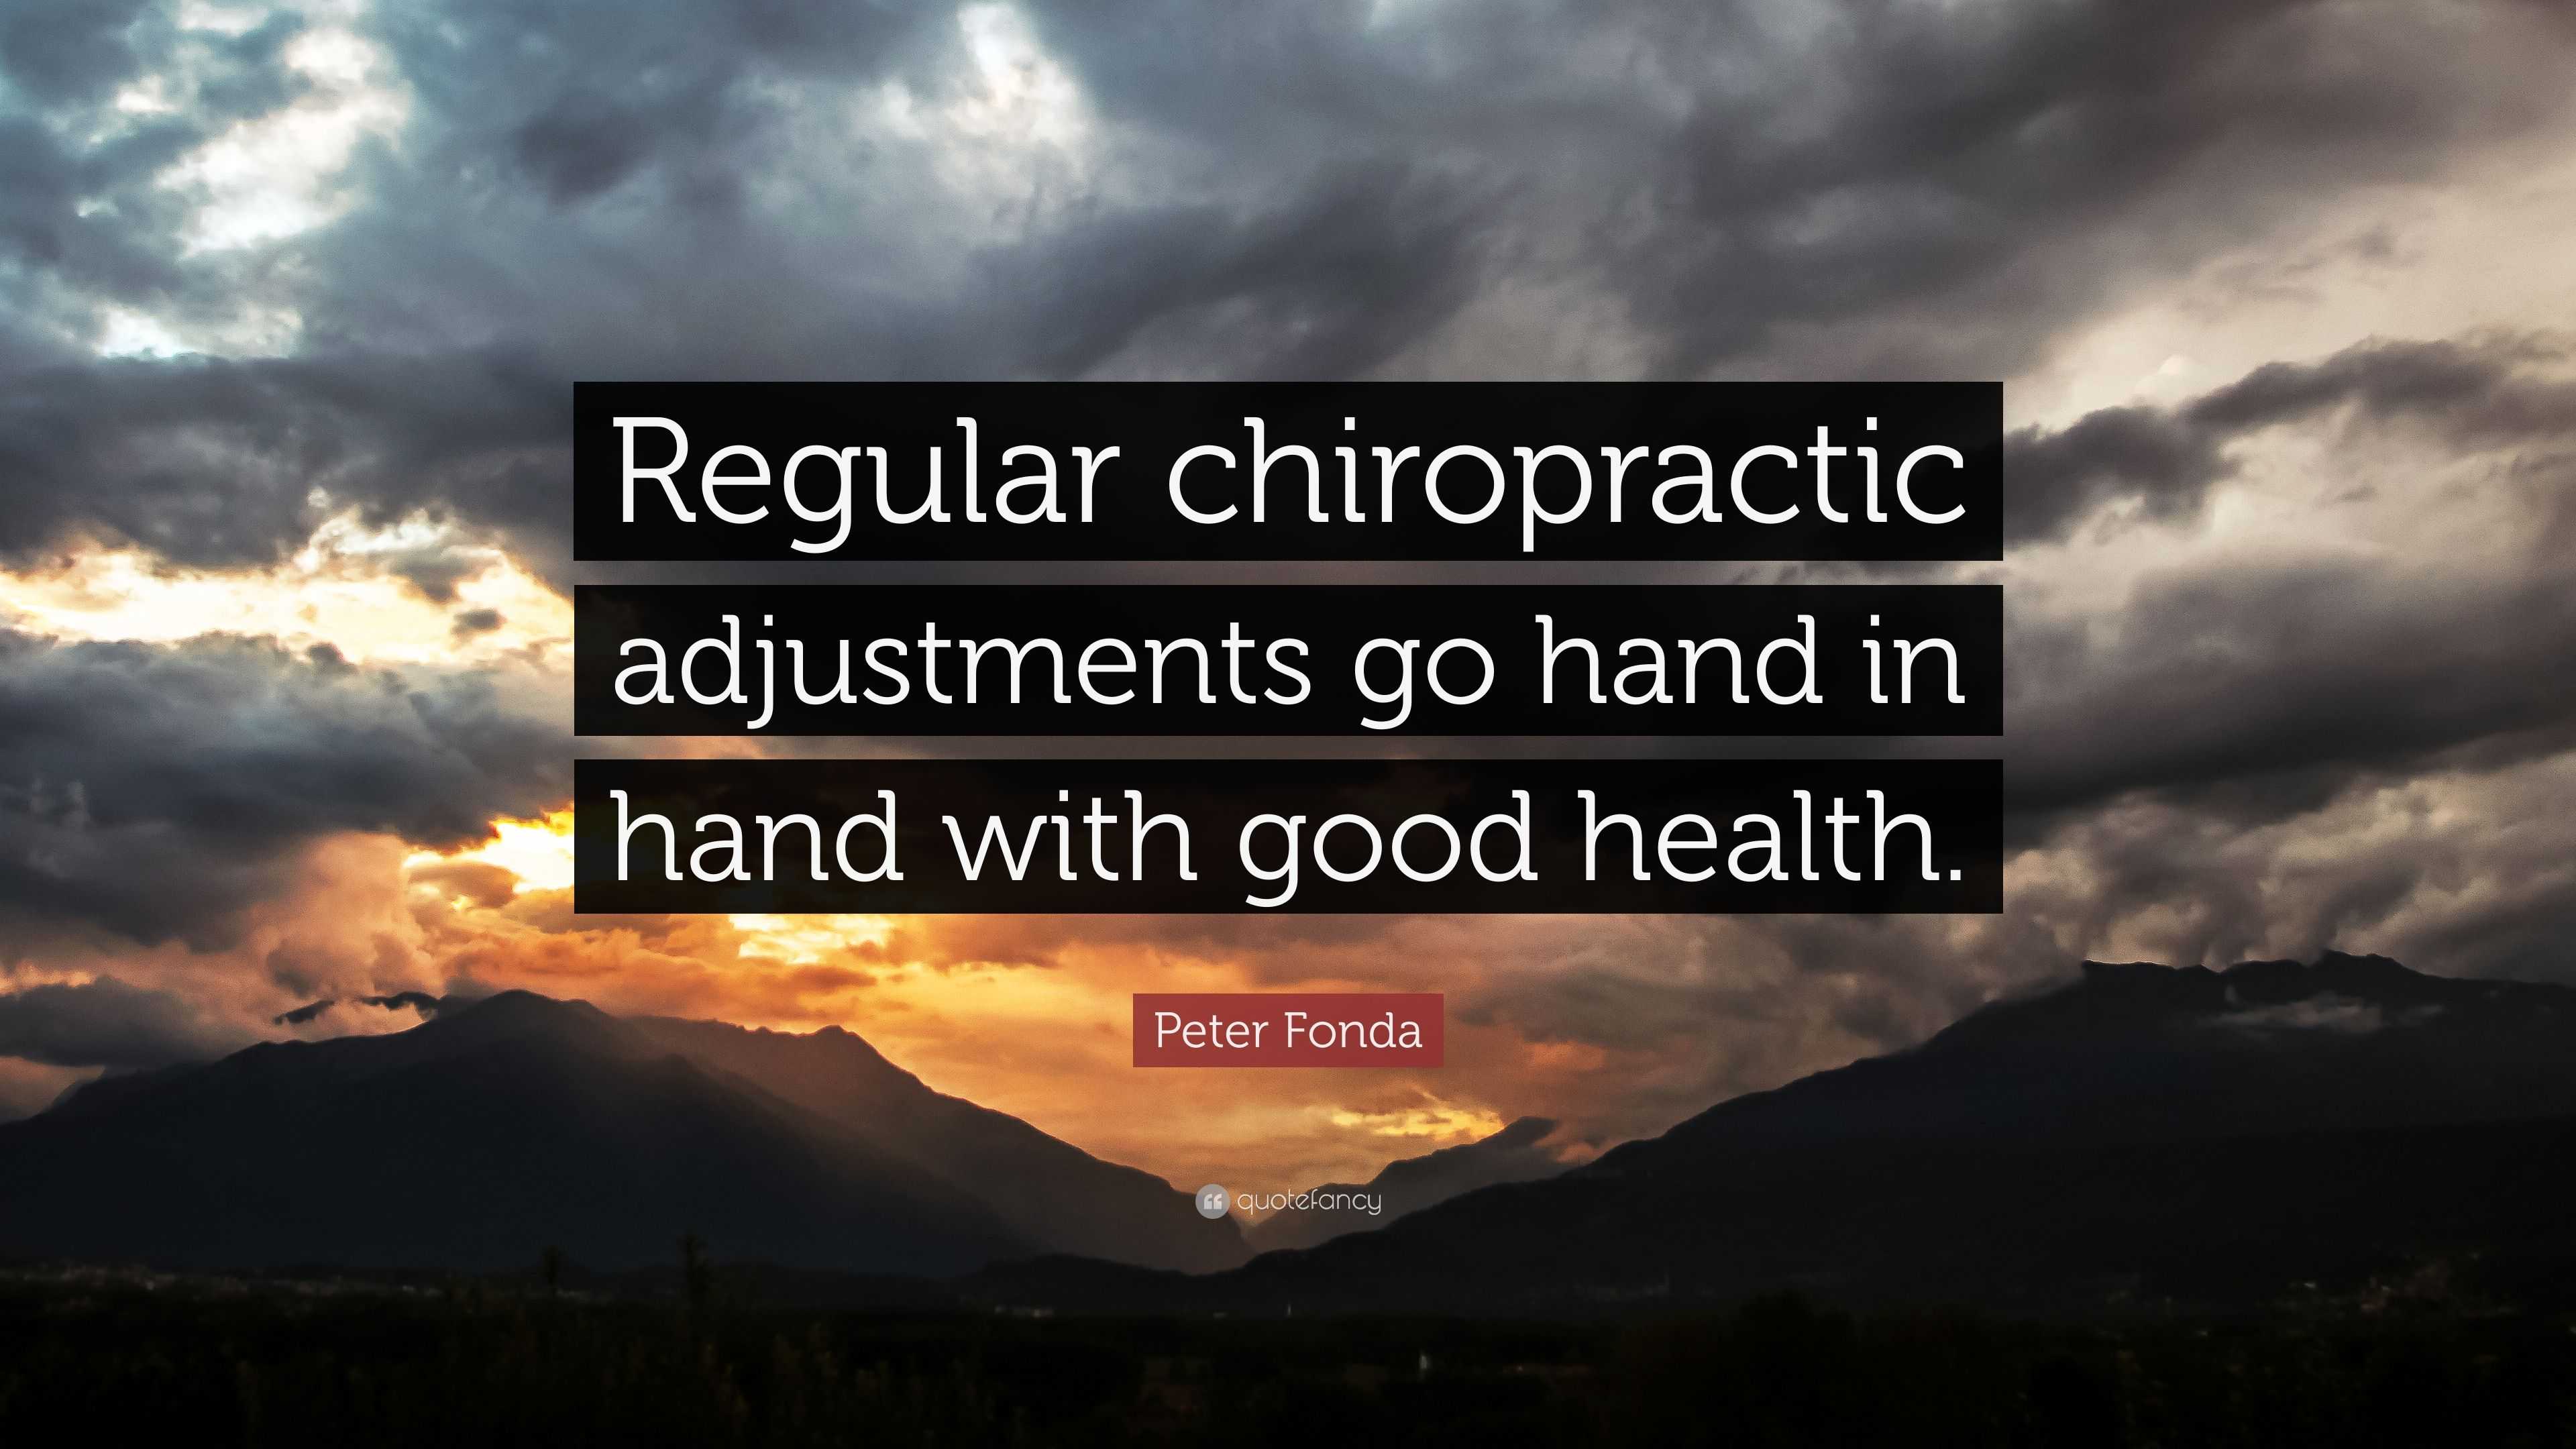 Peter Fonda Quote: “Regular chiropractic adjustments go hand in hand